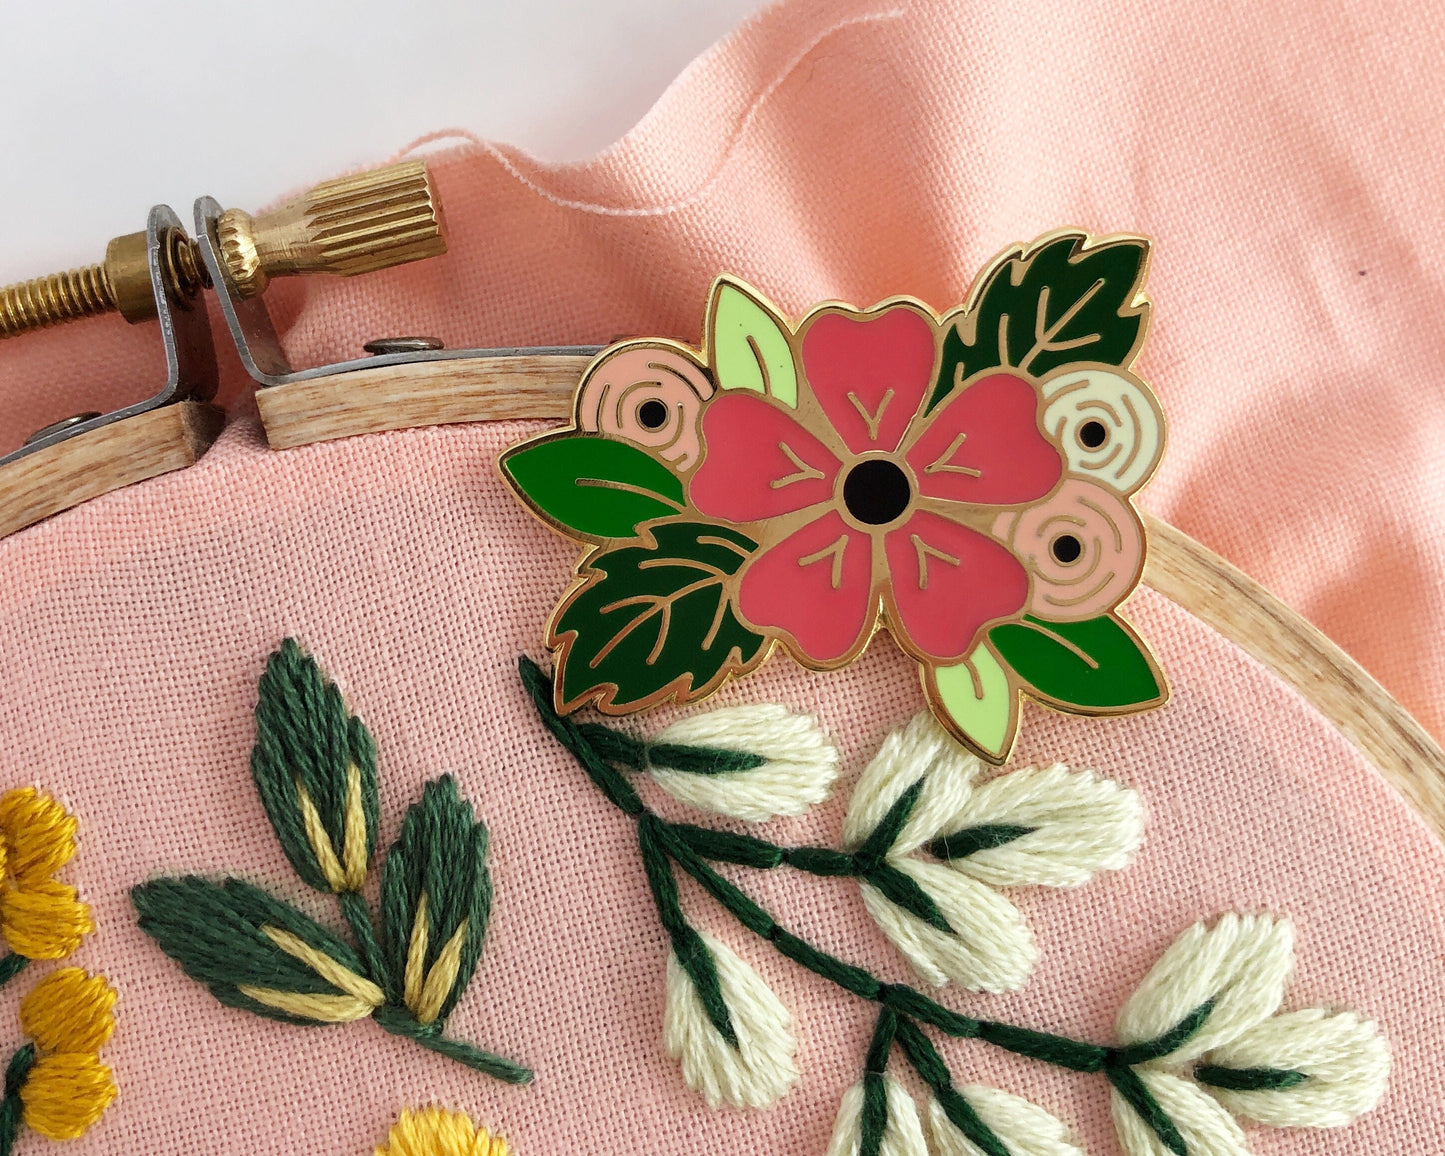 Floral needle-minder, Enamel needleminder, magnetic needleminder, cross stitch needle minder, embroidery needleminder, embroidery accessory